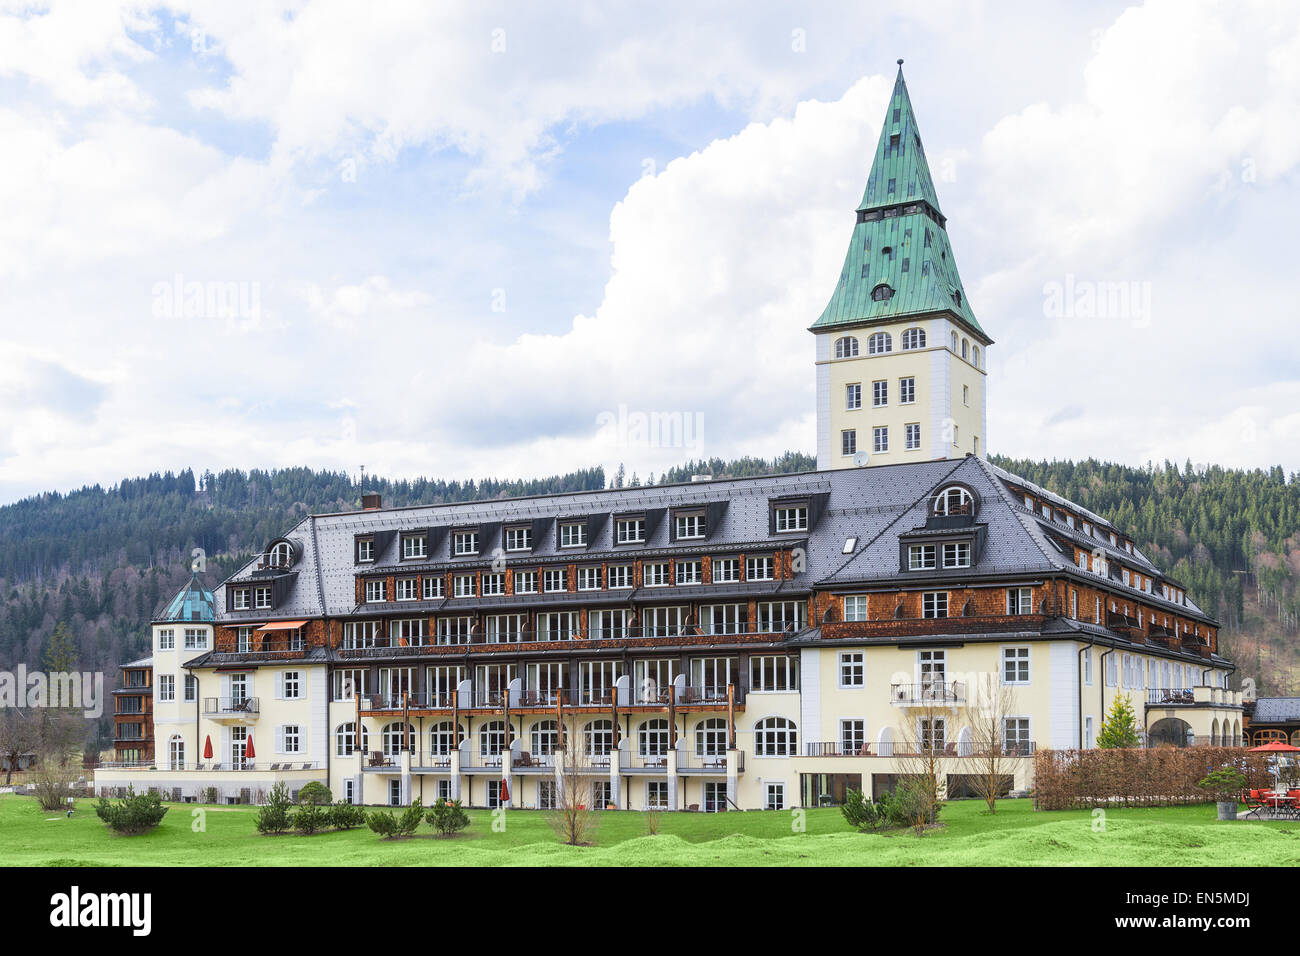 La réunion des dirigeants du monde top 8 puissances économiques du G8 au Sommet se tiendra à l'été 2015, au Schloss Elmau, près de la station de ski de Garmisch-Partenkirchen et à proximité de la frontière autrichienne. Banque D'Images